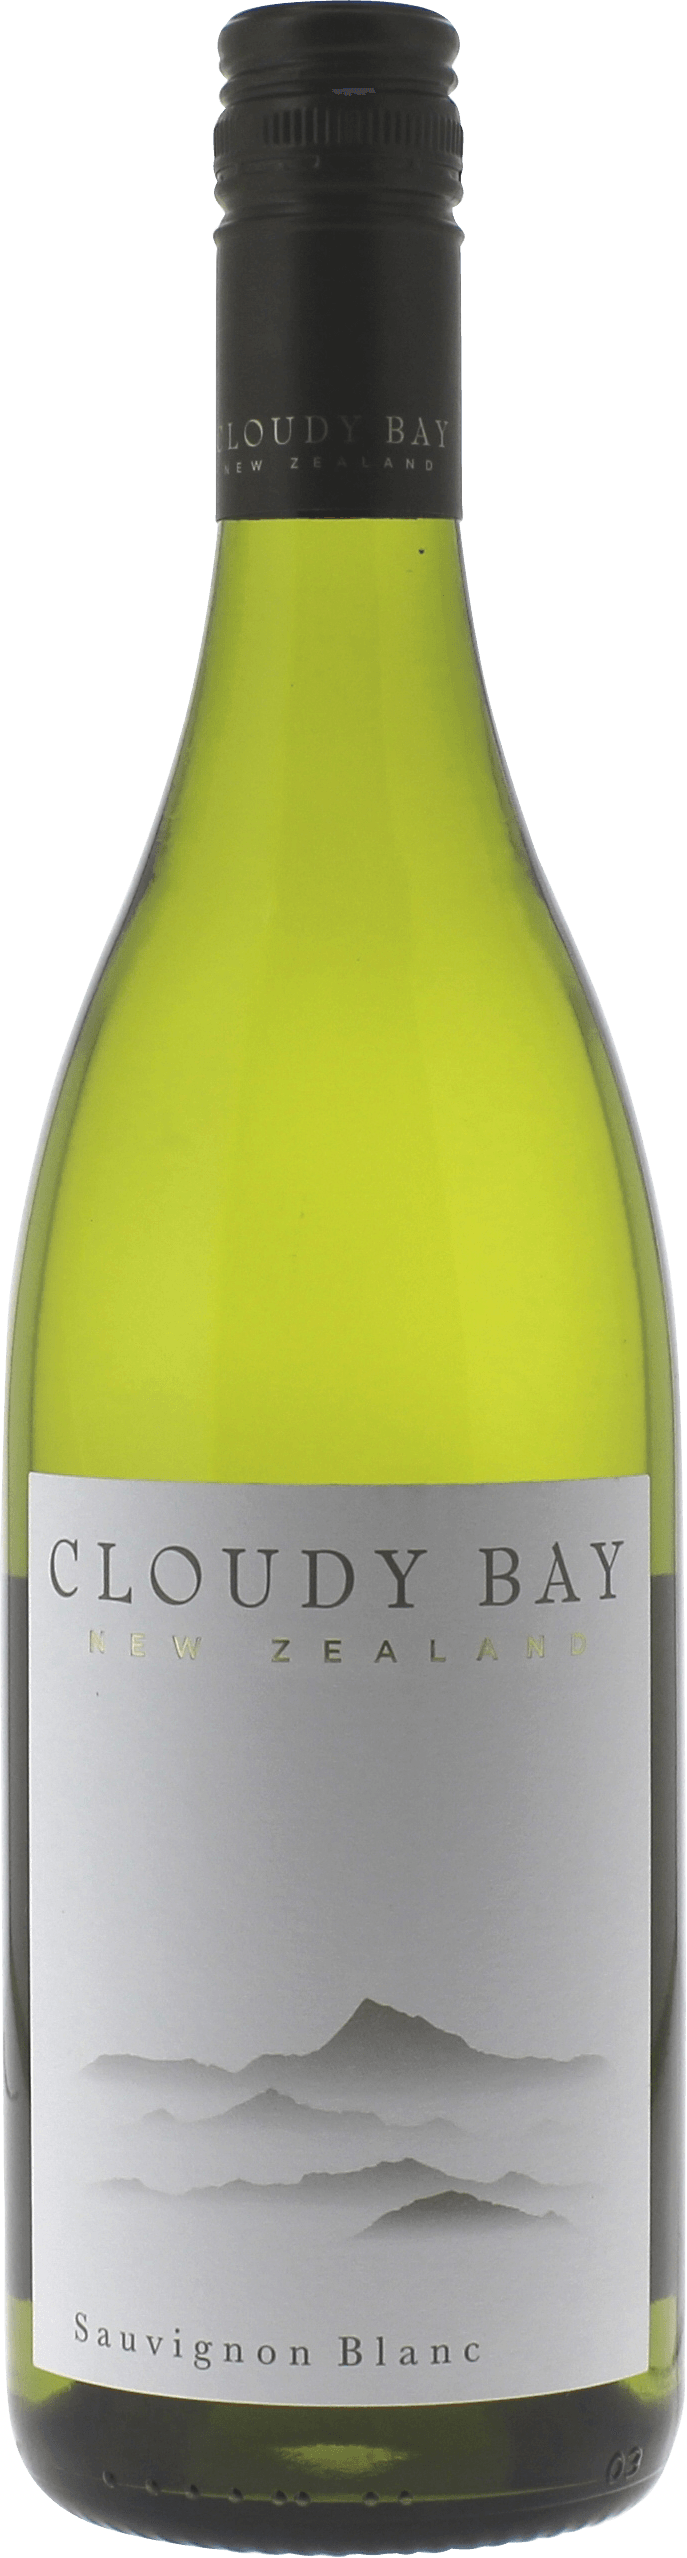 Cloudy bay sauvignon blanc marlborough 2019  Nouvelle-Zlande, Nouvelle Zelande